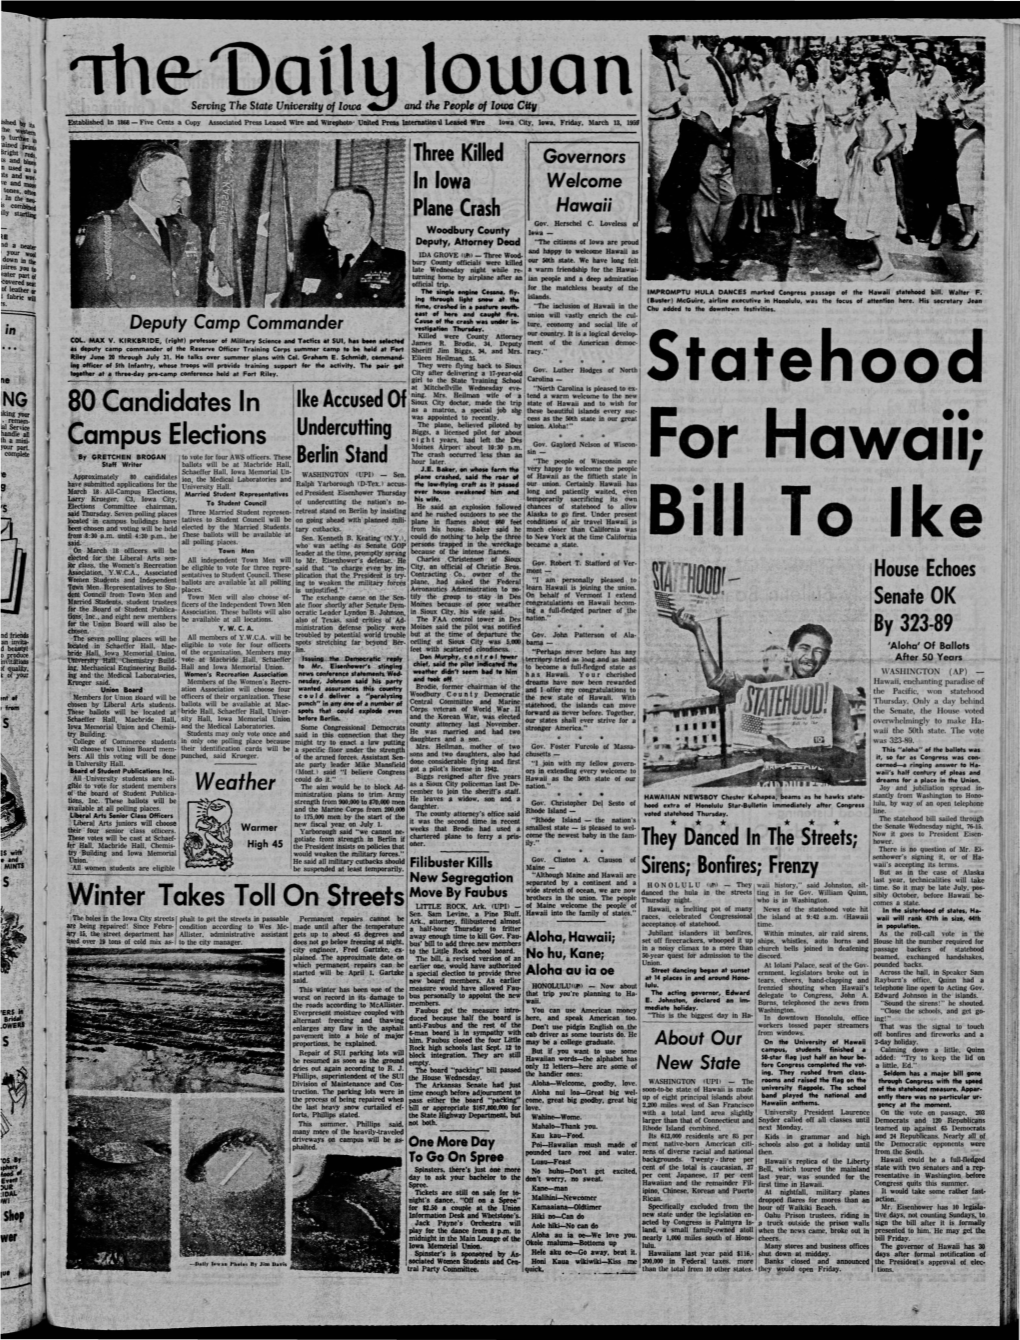 Daily Iowan (Iowa City, Iowa), 1959-03-13